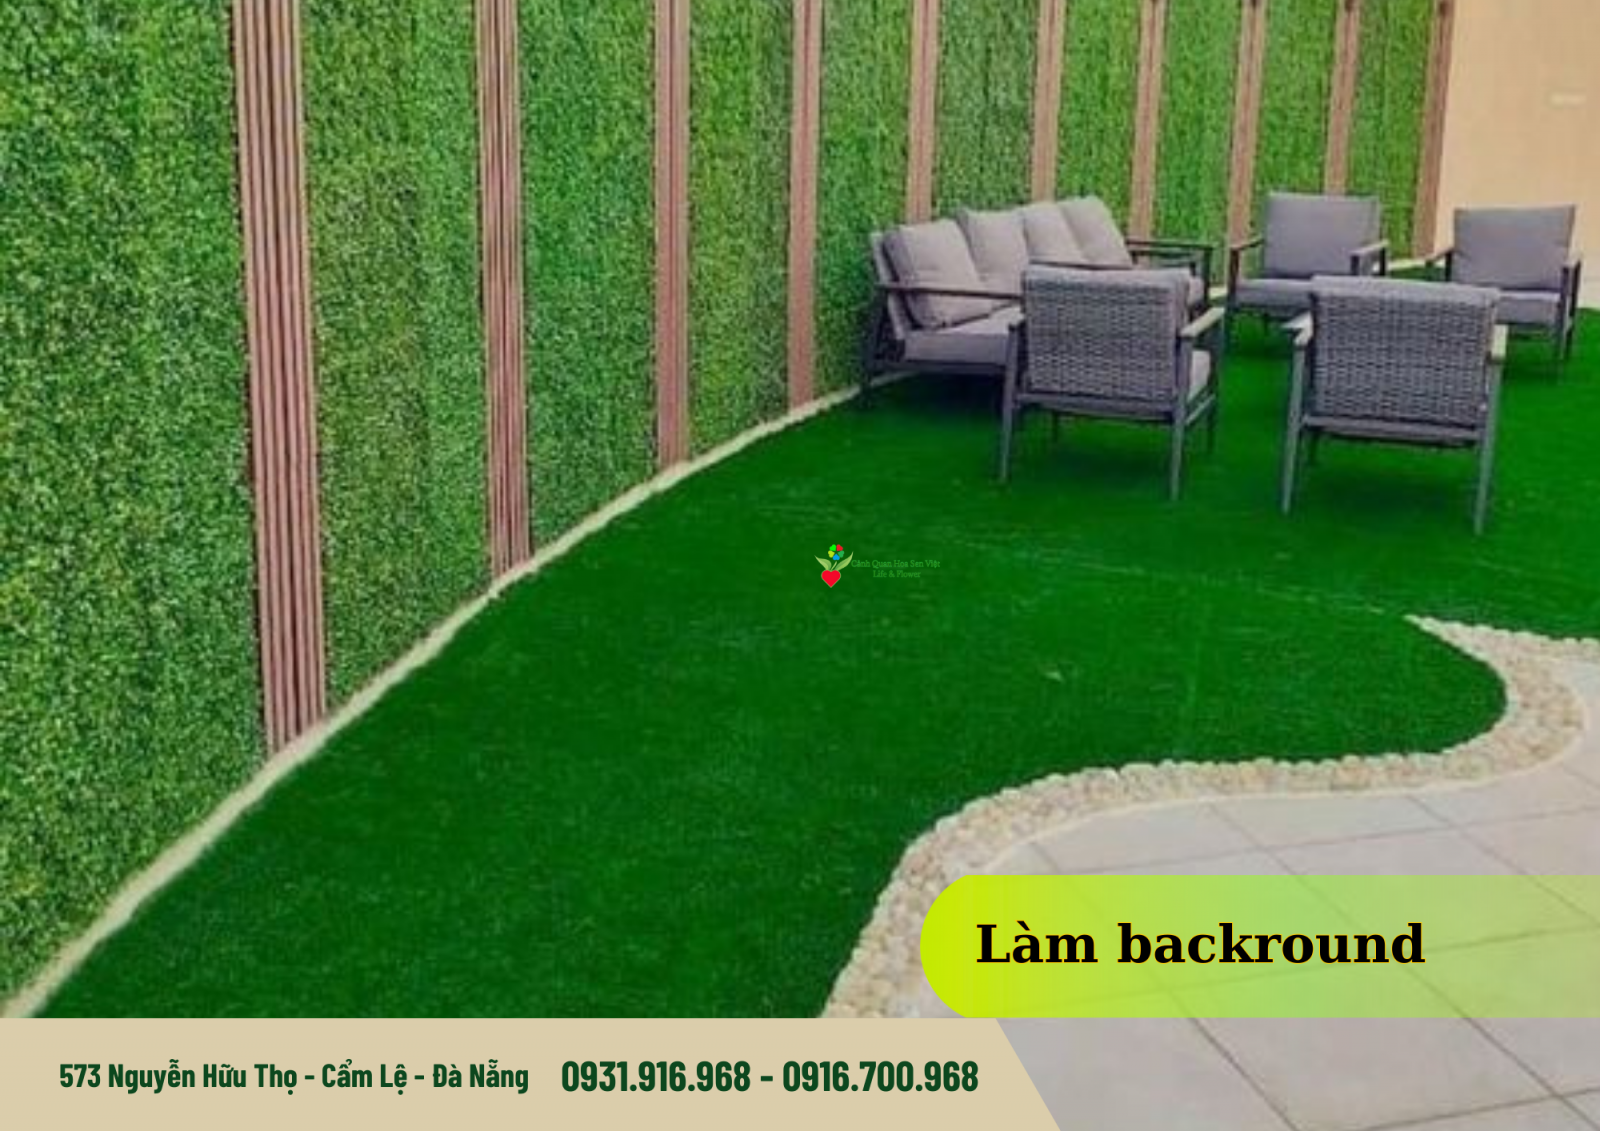 Cỏ nhân tạo trải sân backround - Cửa hàng cỏ nhân tạo Đà Nẵng